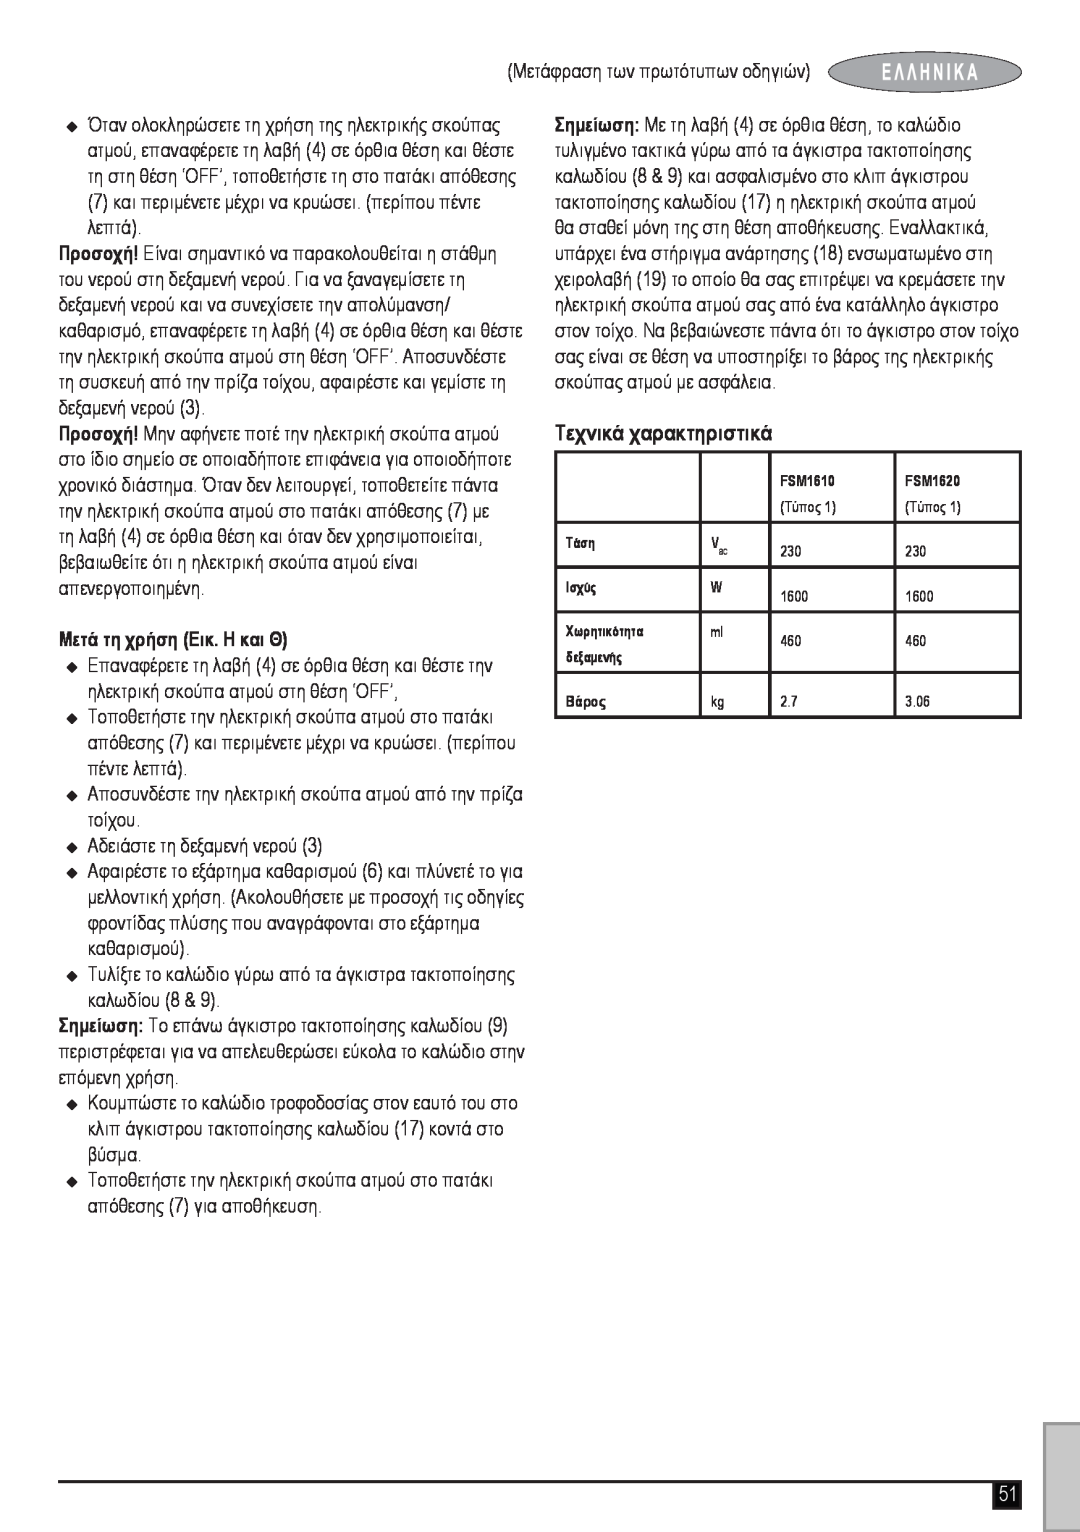 Black & Decker FSM1620 manual Τεχνικά χαρακτηριστικά, Μετά τη χρήση Εικ. H και Θ 